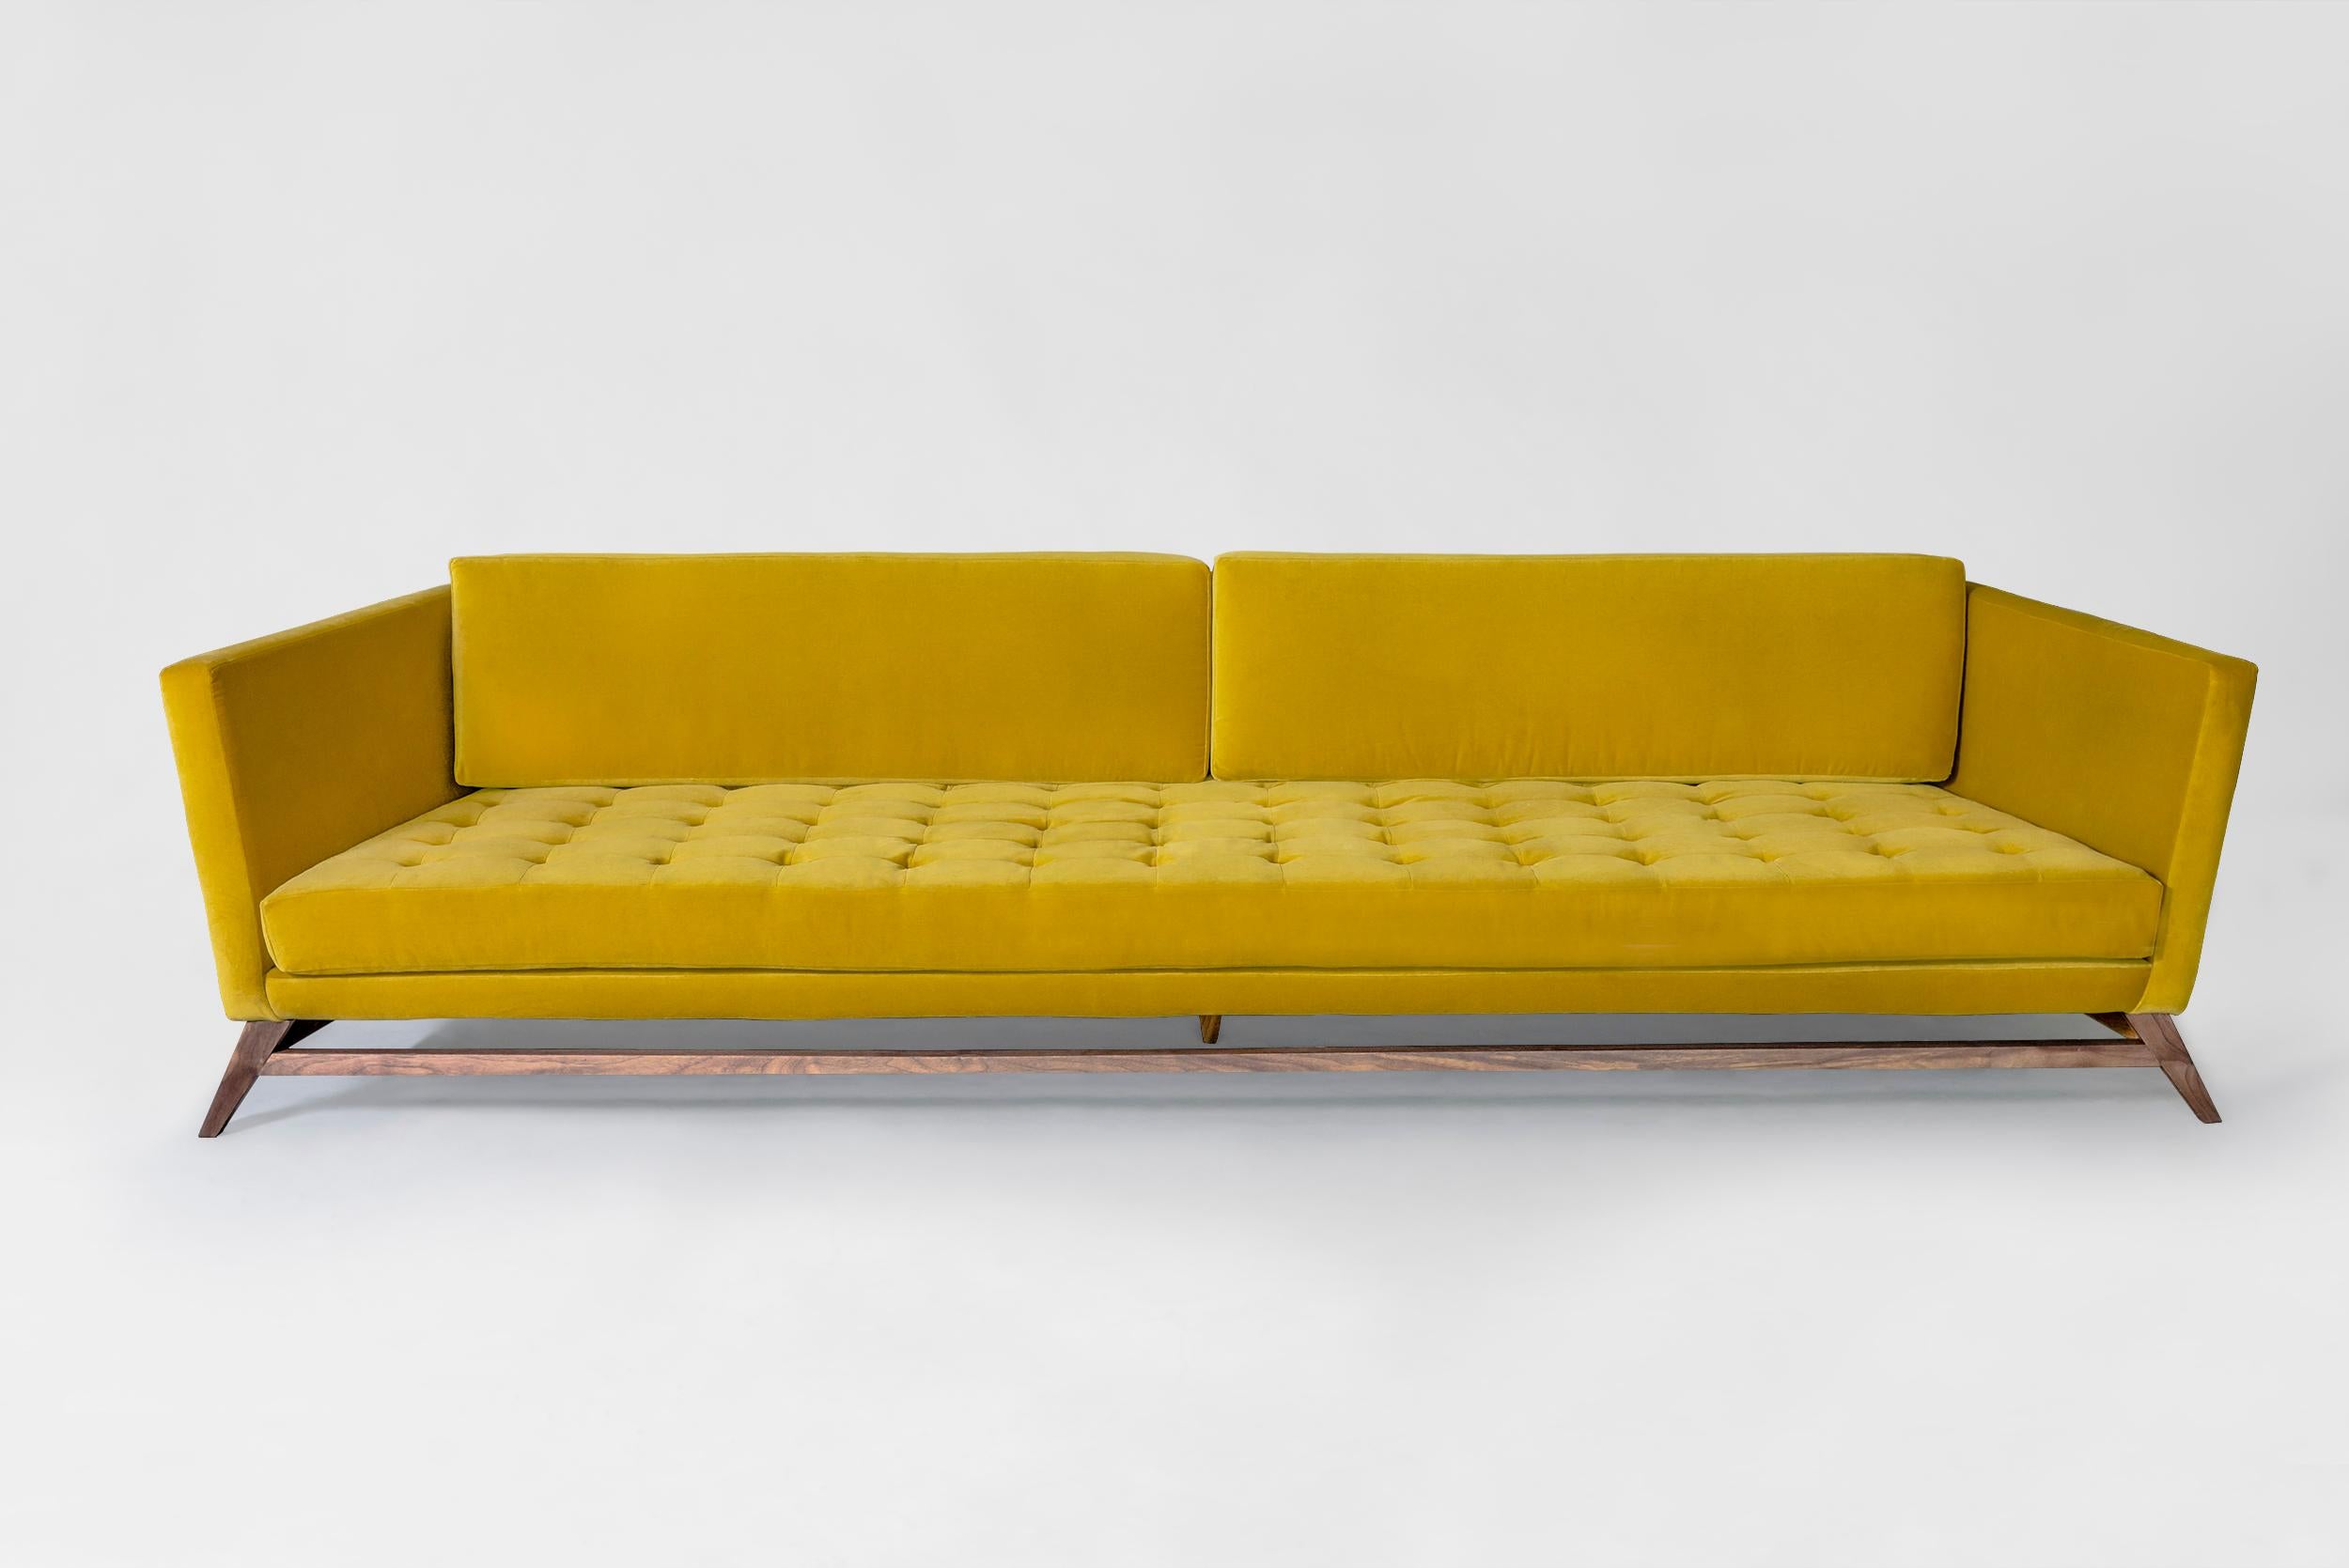 Gelbes Sofa Eclipse von Atra Design
Abmessungen: T 220 x B 108,8 x H 79 cm
MATERIALIEN: Stoff, Nussbaumholz
Erhältlich in anderen Farben.

Atra Design
Wir sind Atra, eine Möbelmarke, die von Atra form A, einer in Mexiko-Stadt ansässigen